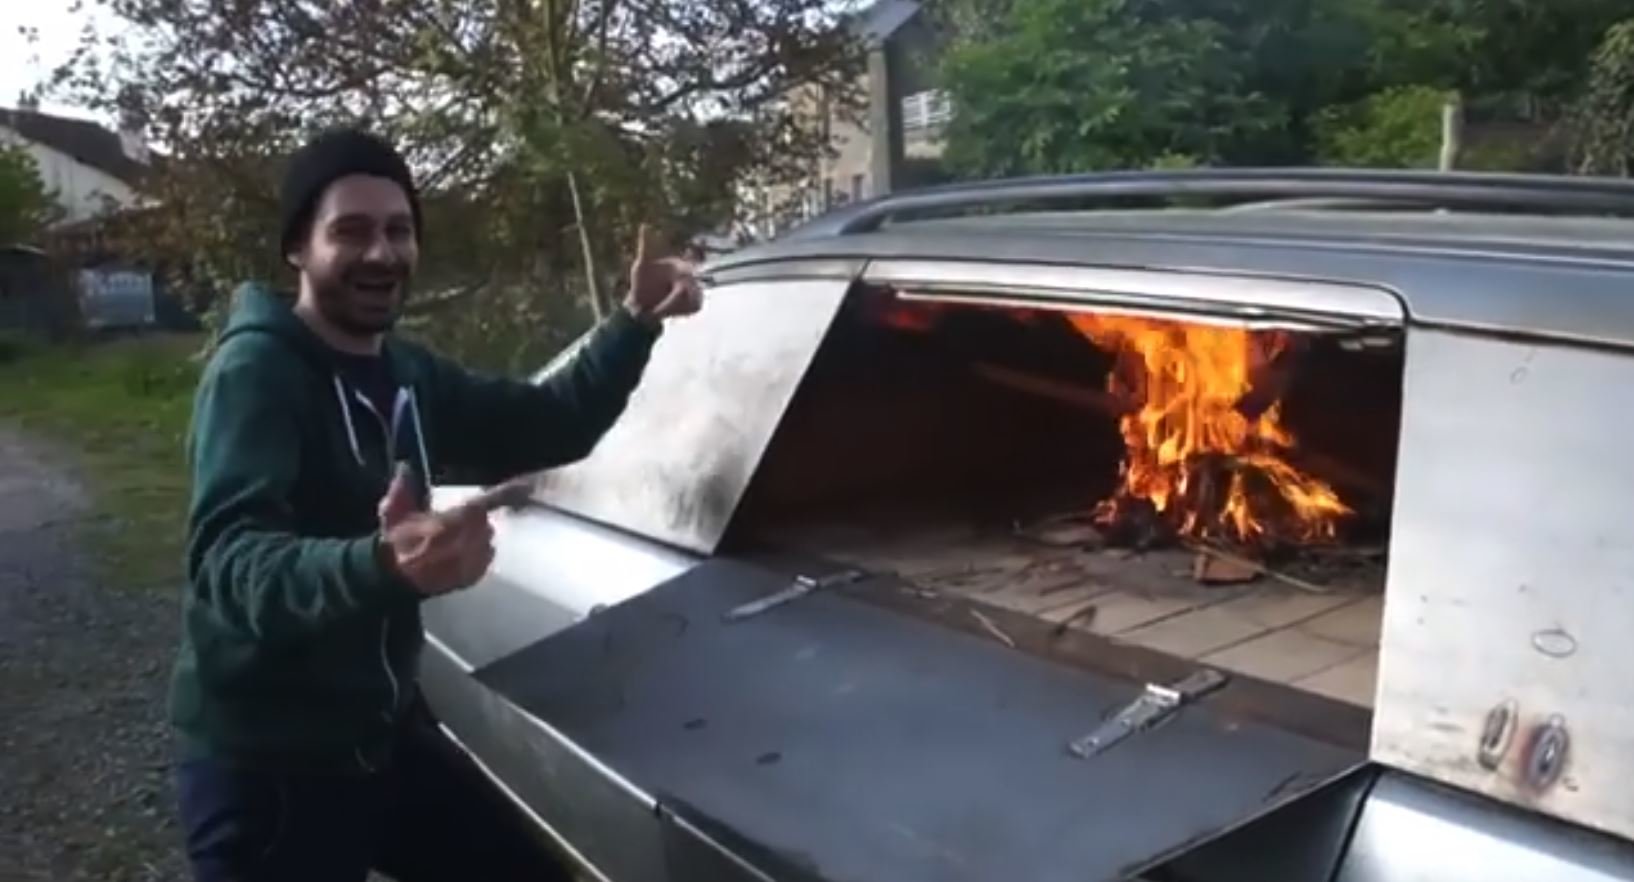 Francouzský umělec Benedetto Bufalino přeměnil starý automobil na pec k přípravě pizzy